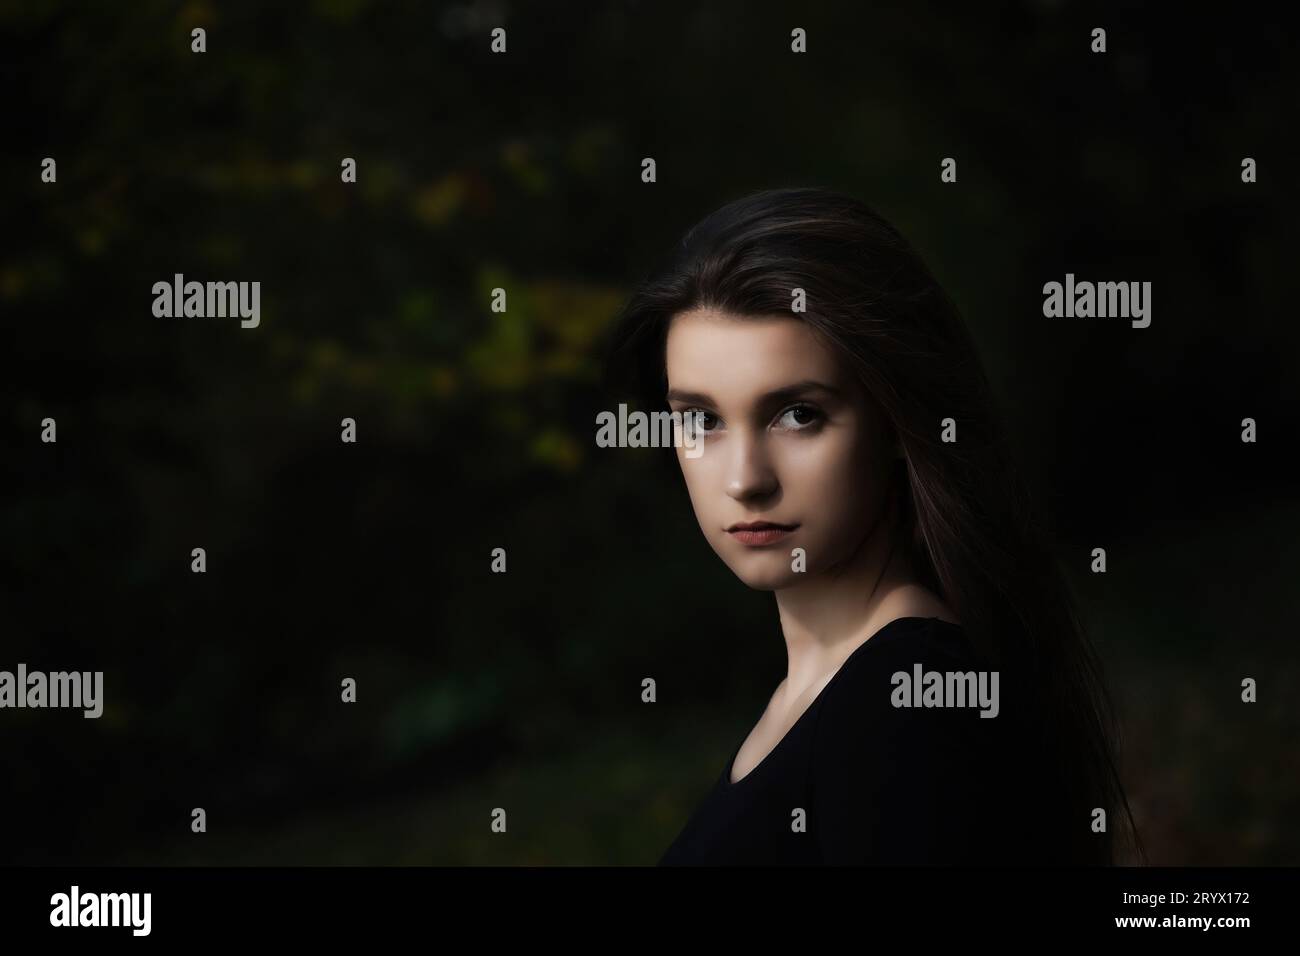 Portrait de fille aux cheveux longs cool posant à l'extérieur sur fond sombre. Horizontalement. Banque D'Images